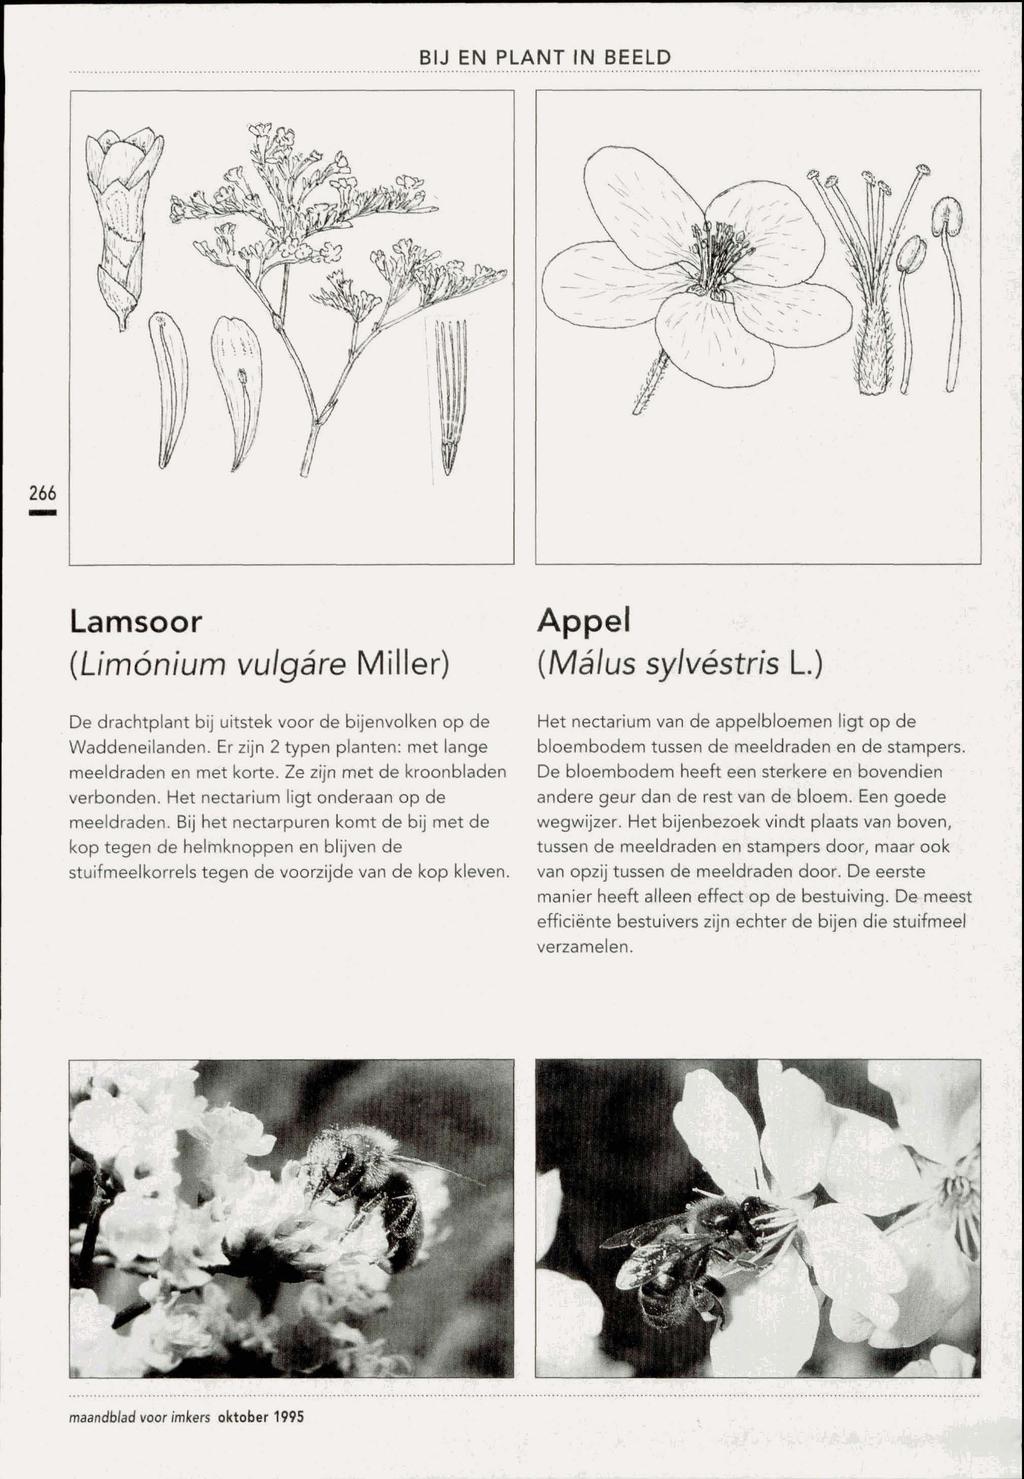 Lamsoor (Limonium vulgare Miller) De drachtplant bij uitstek voor de bijenvolken op de Waddeneilanden. Er zijn 2 typen planten: met lange meeldraden en met korte. Ze zijn met de kroonbladen verbonden.